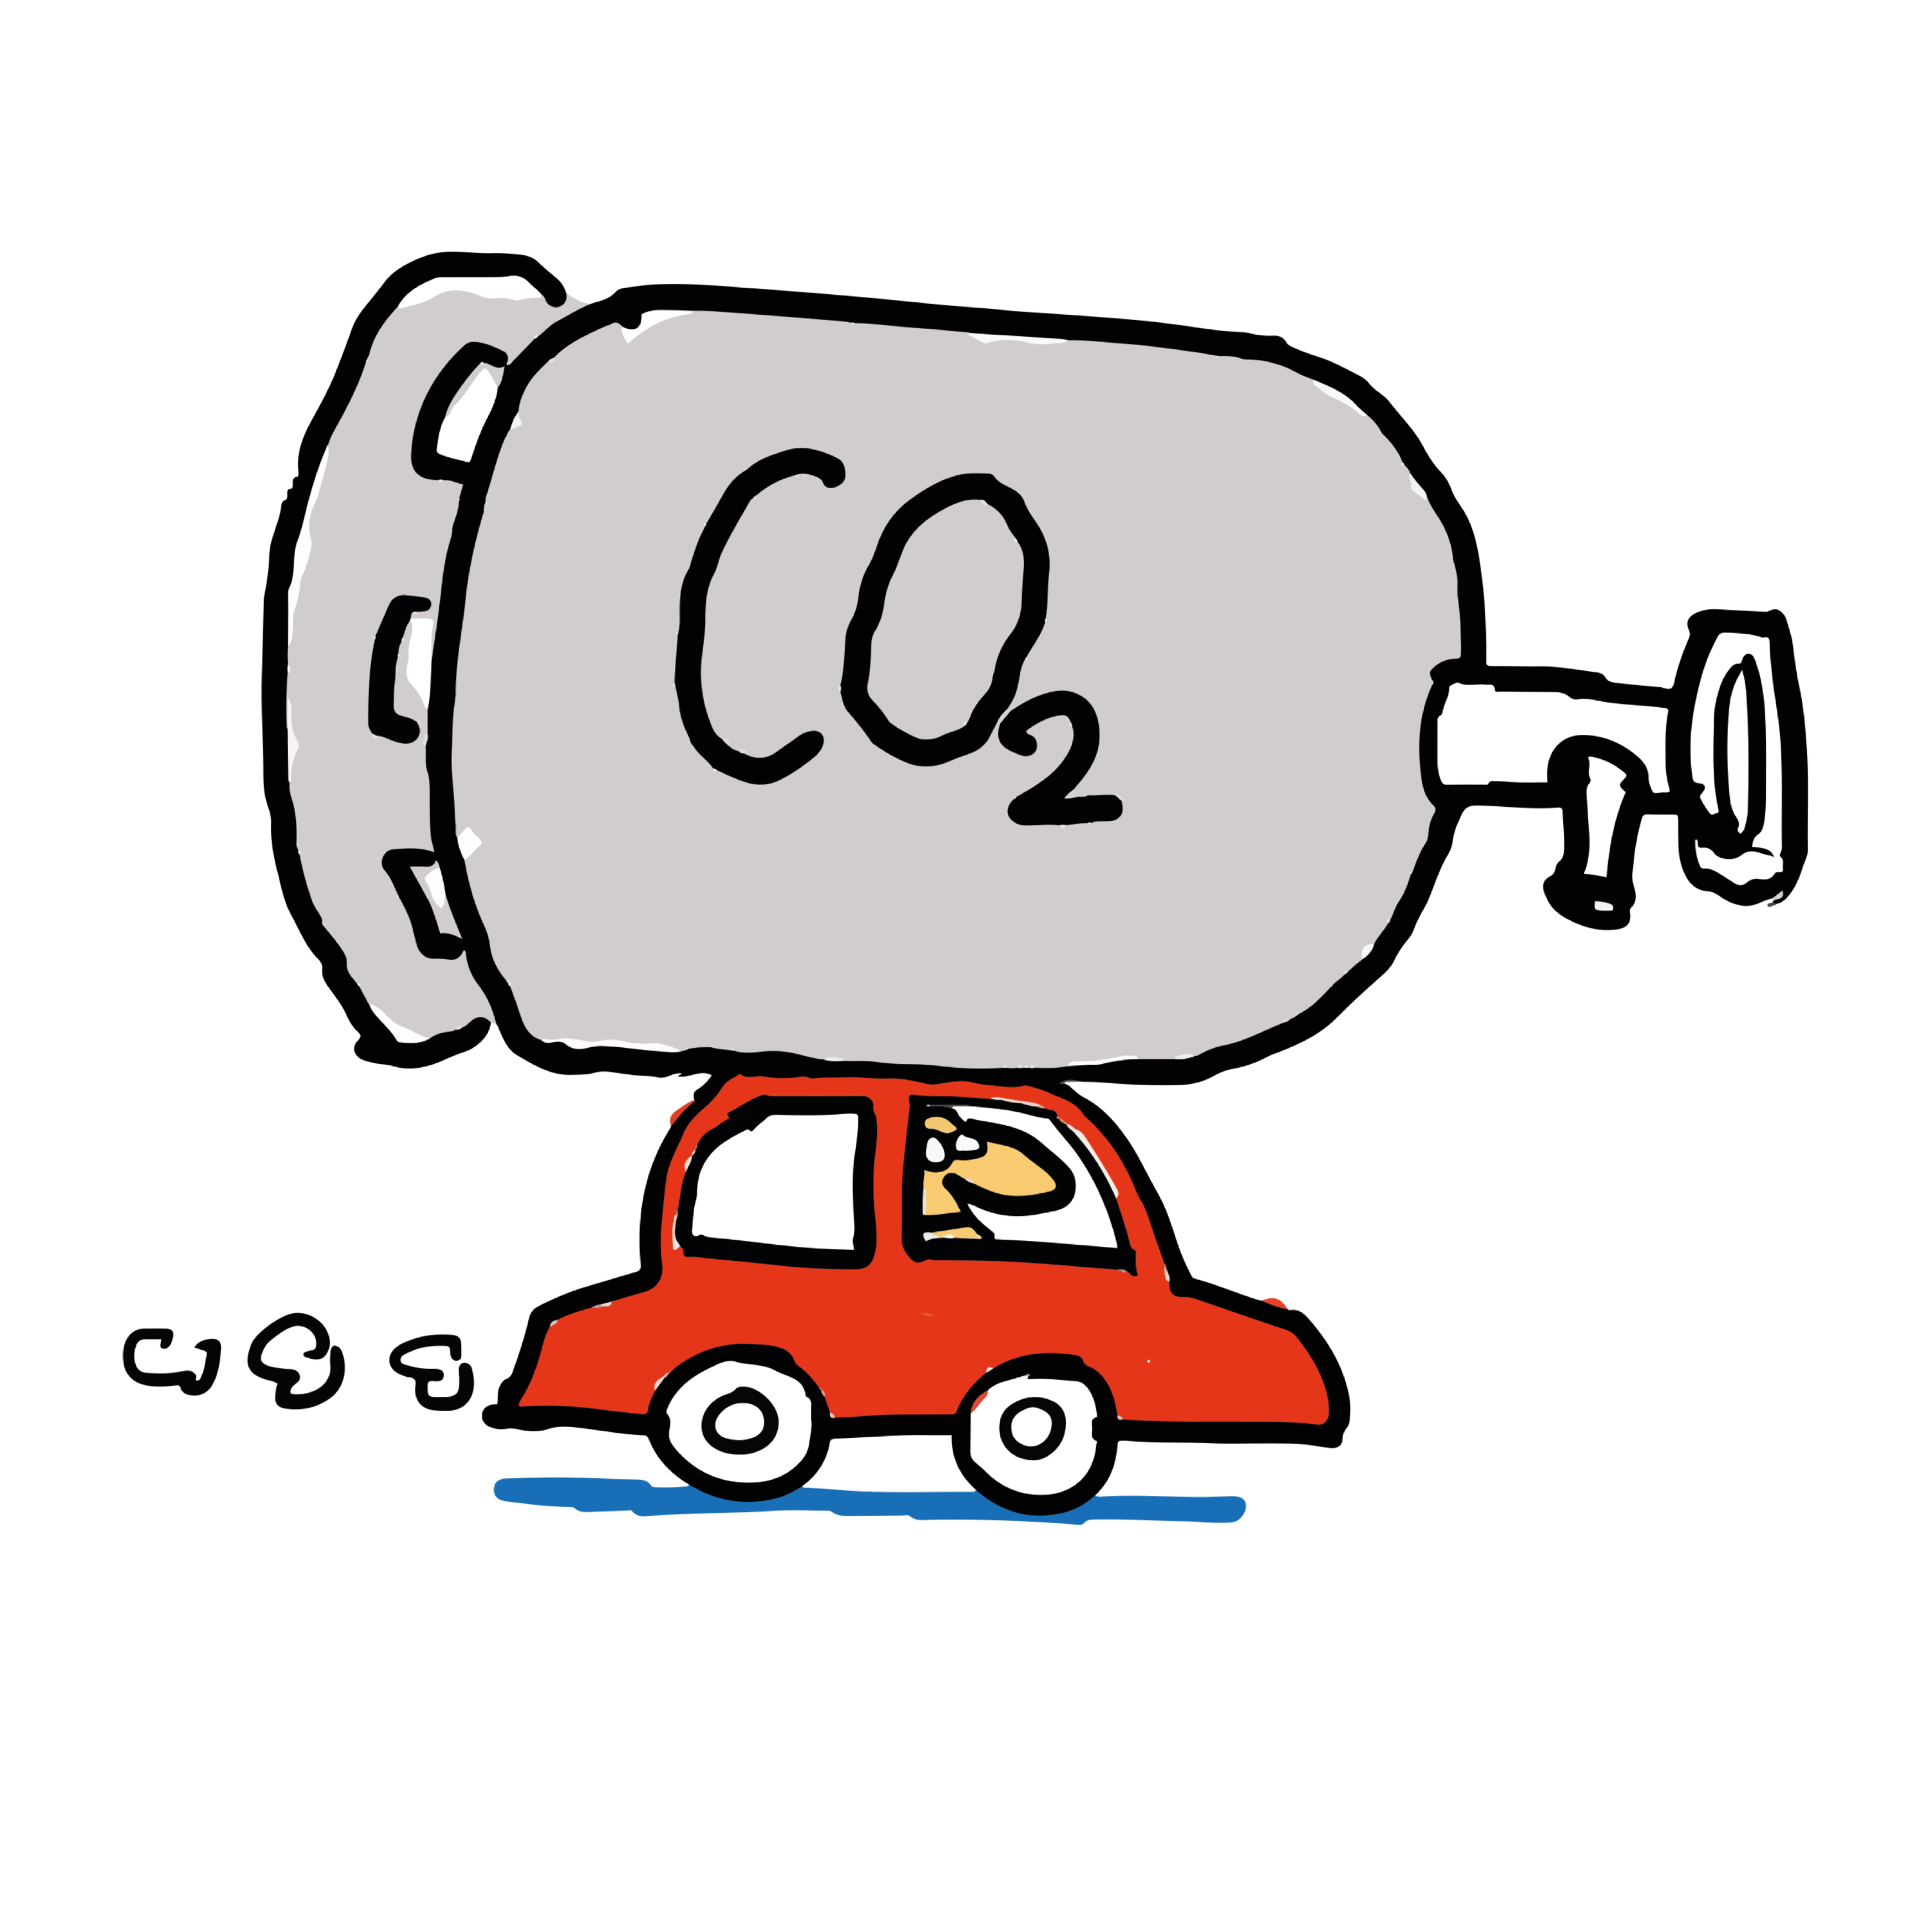 ZEO CO2 Kanister auf Auto mit Hintergrund